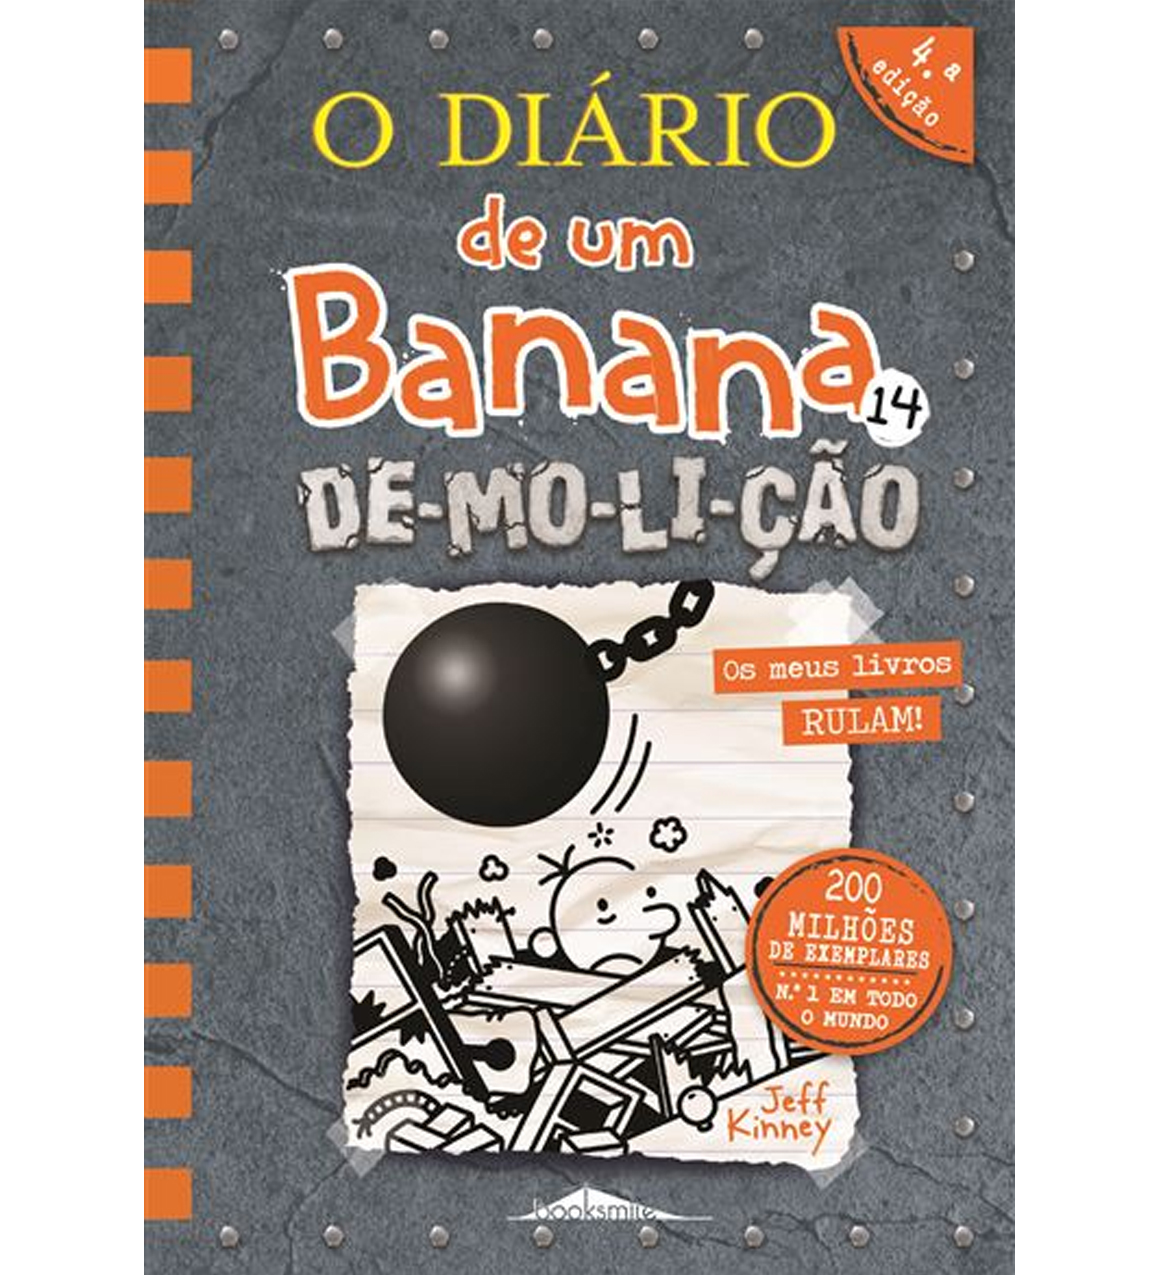 Redesign do Livro Diario de um Banana. by Lucian Bruno - Issuu